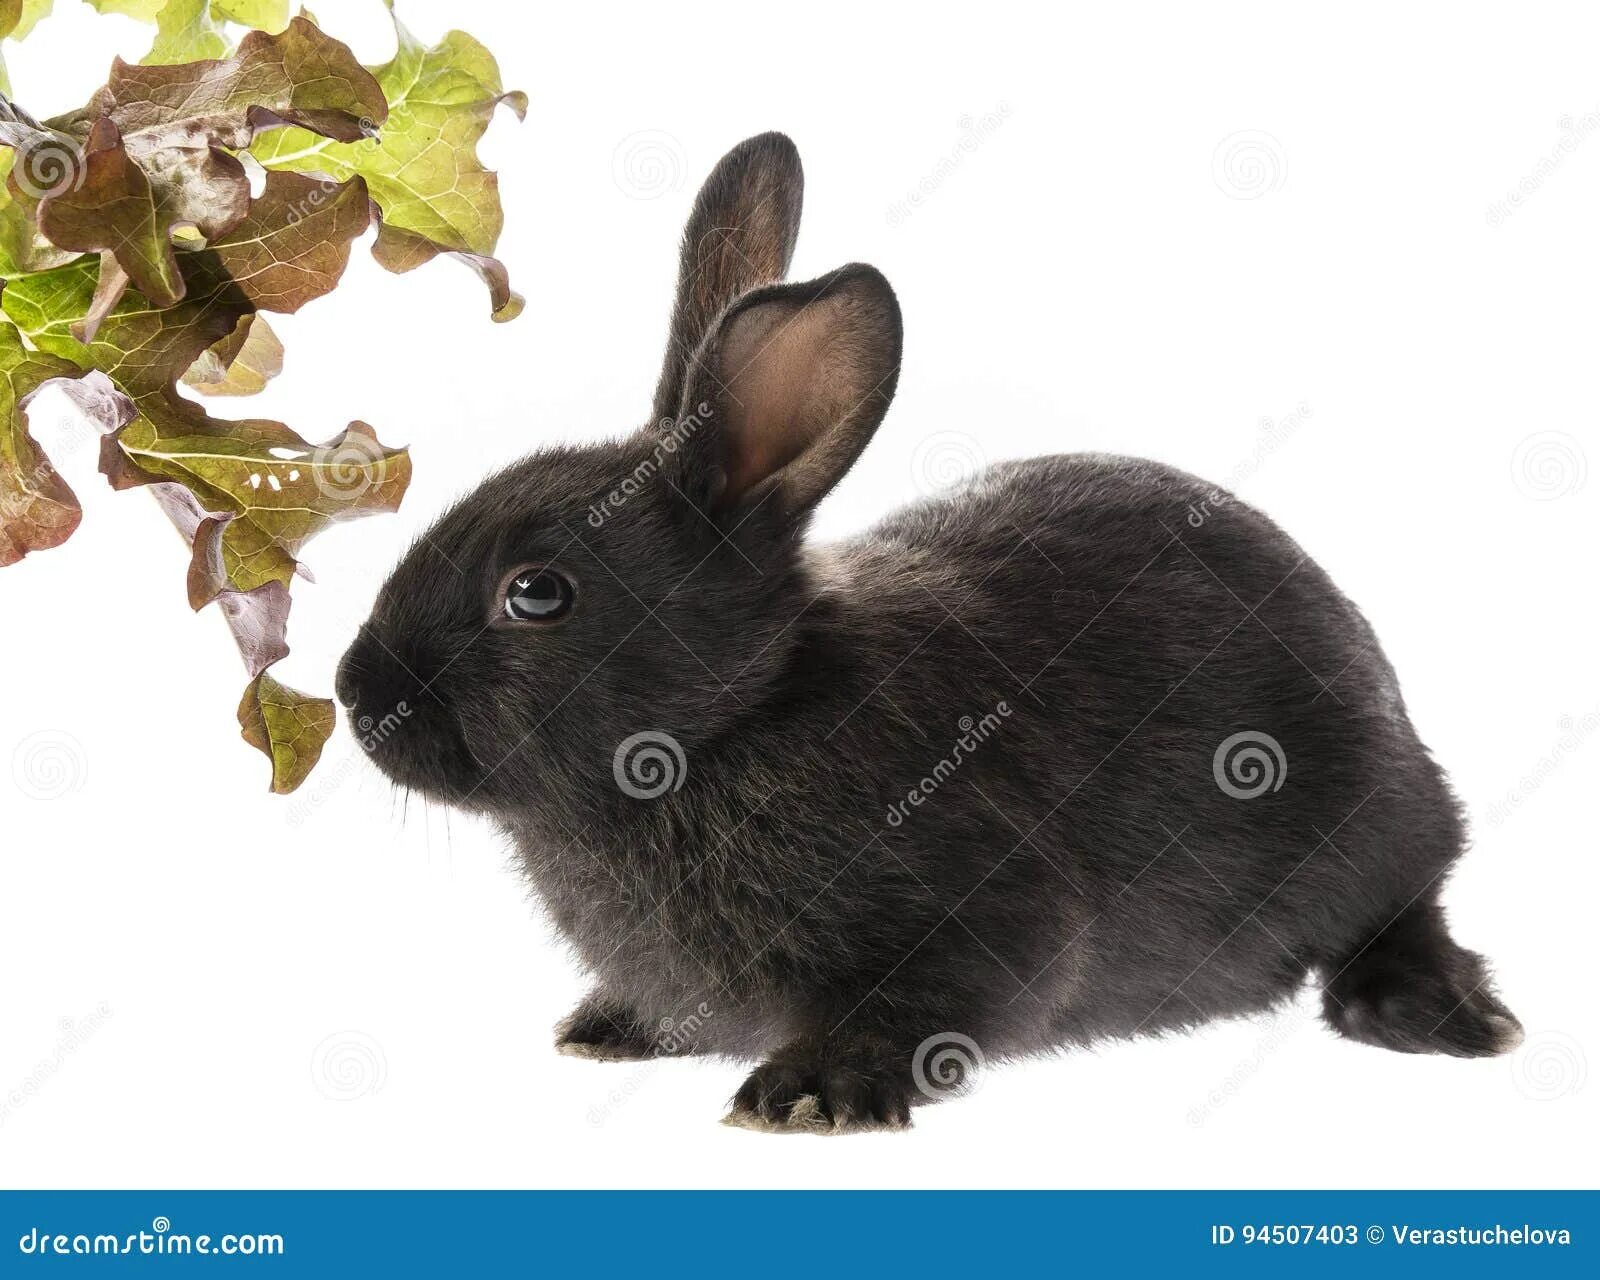 Черный кролик на английском. Черный кролик. Черный крольчонок без фона. Черный кролик без фона. Черный кролик на белом фоне.